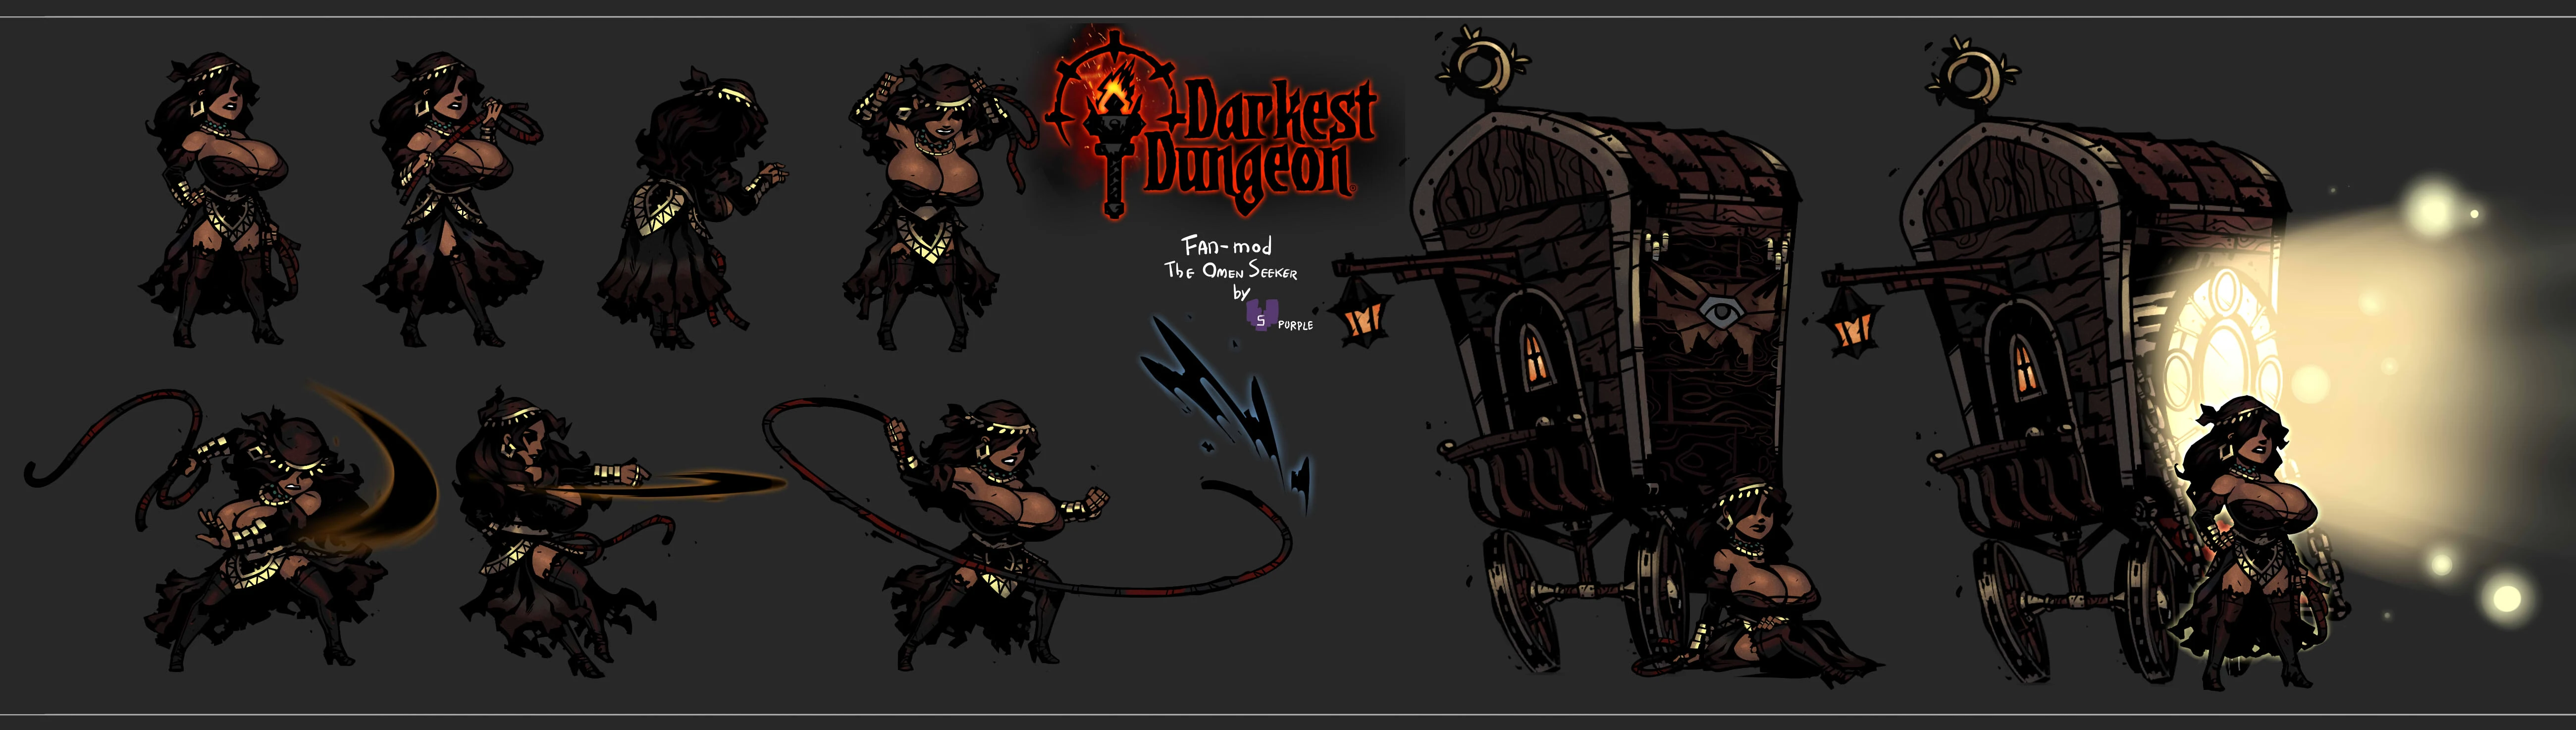 darkest dungeon mod classes